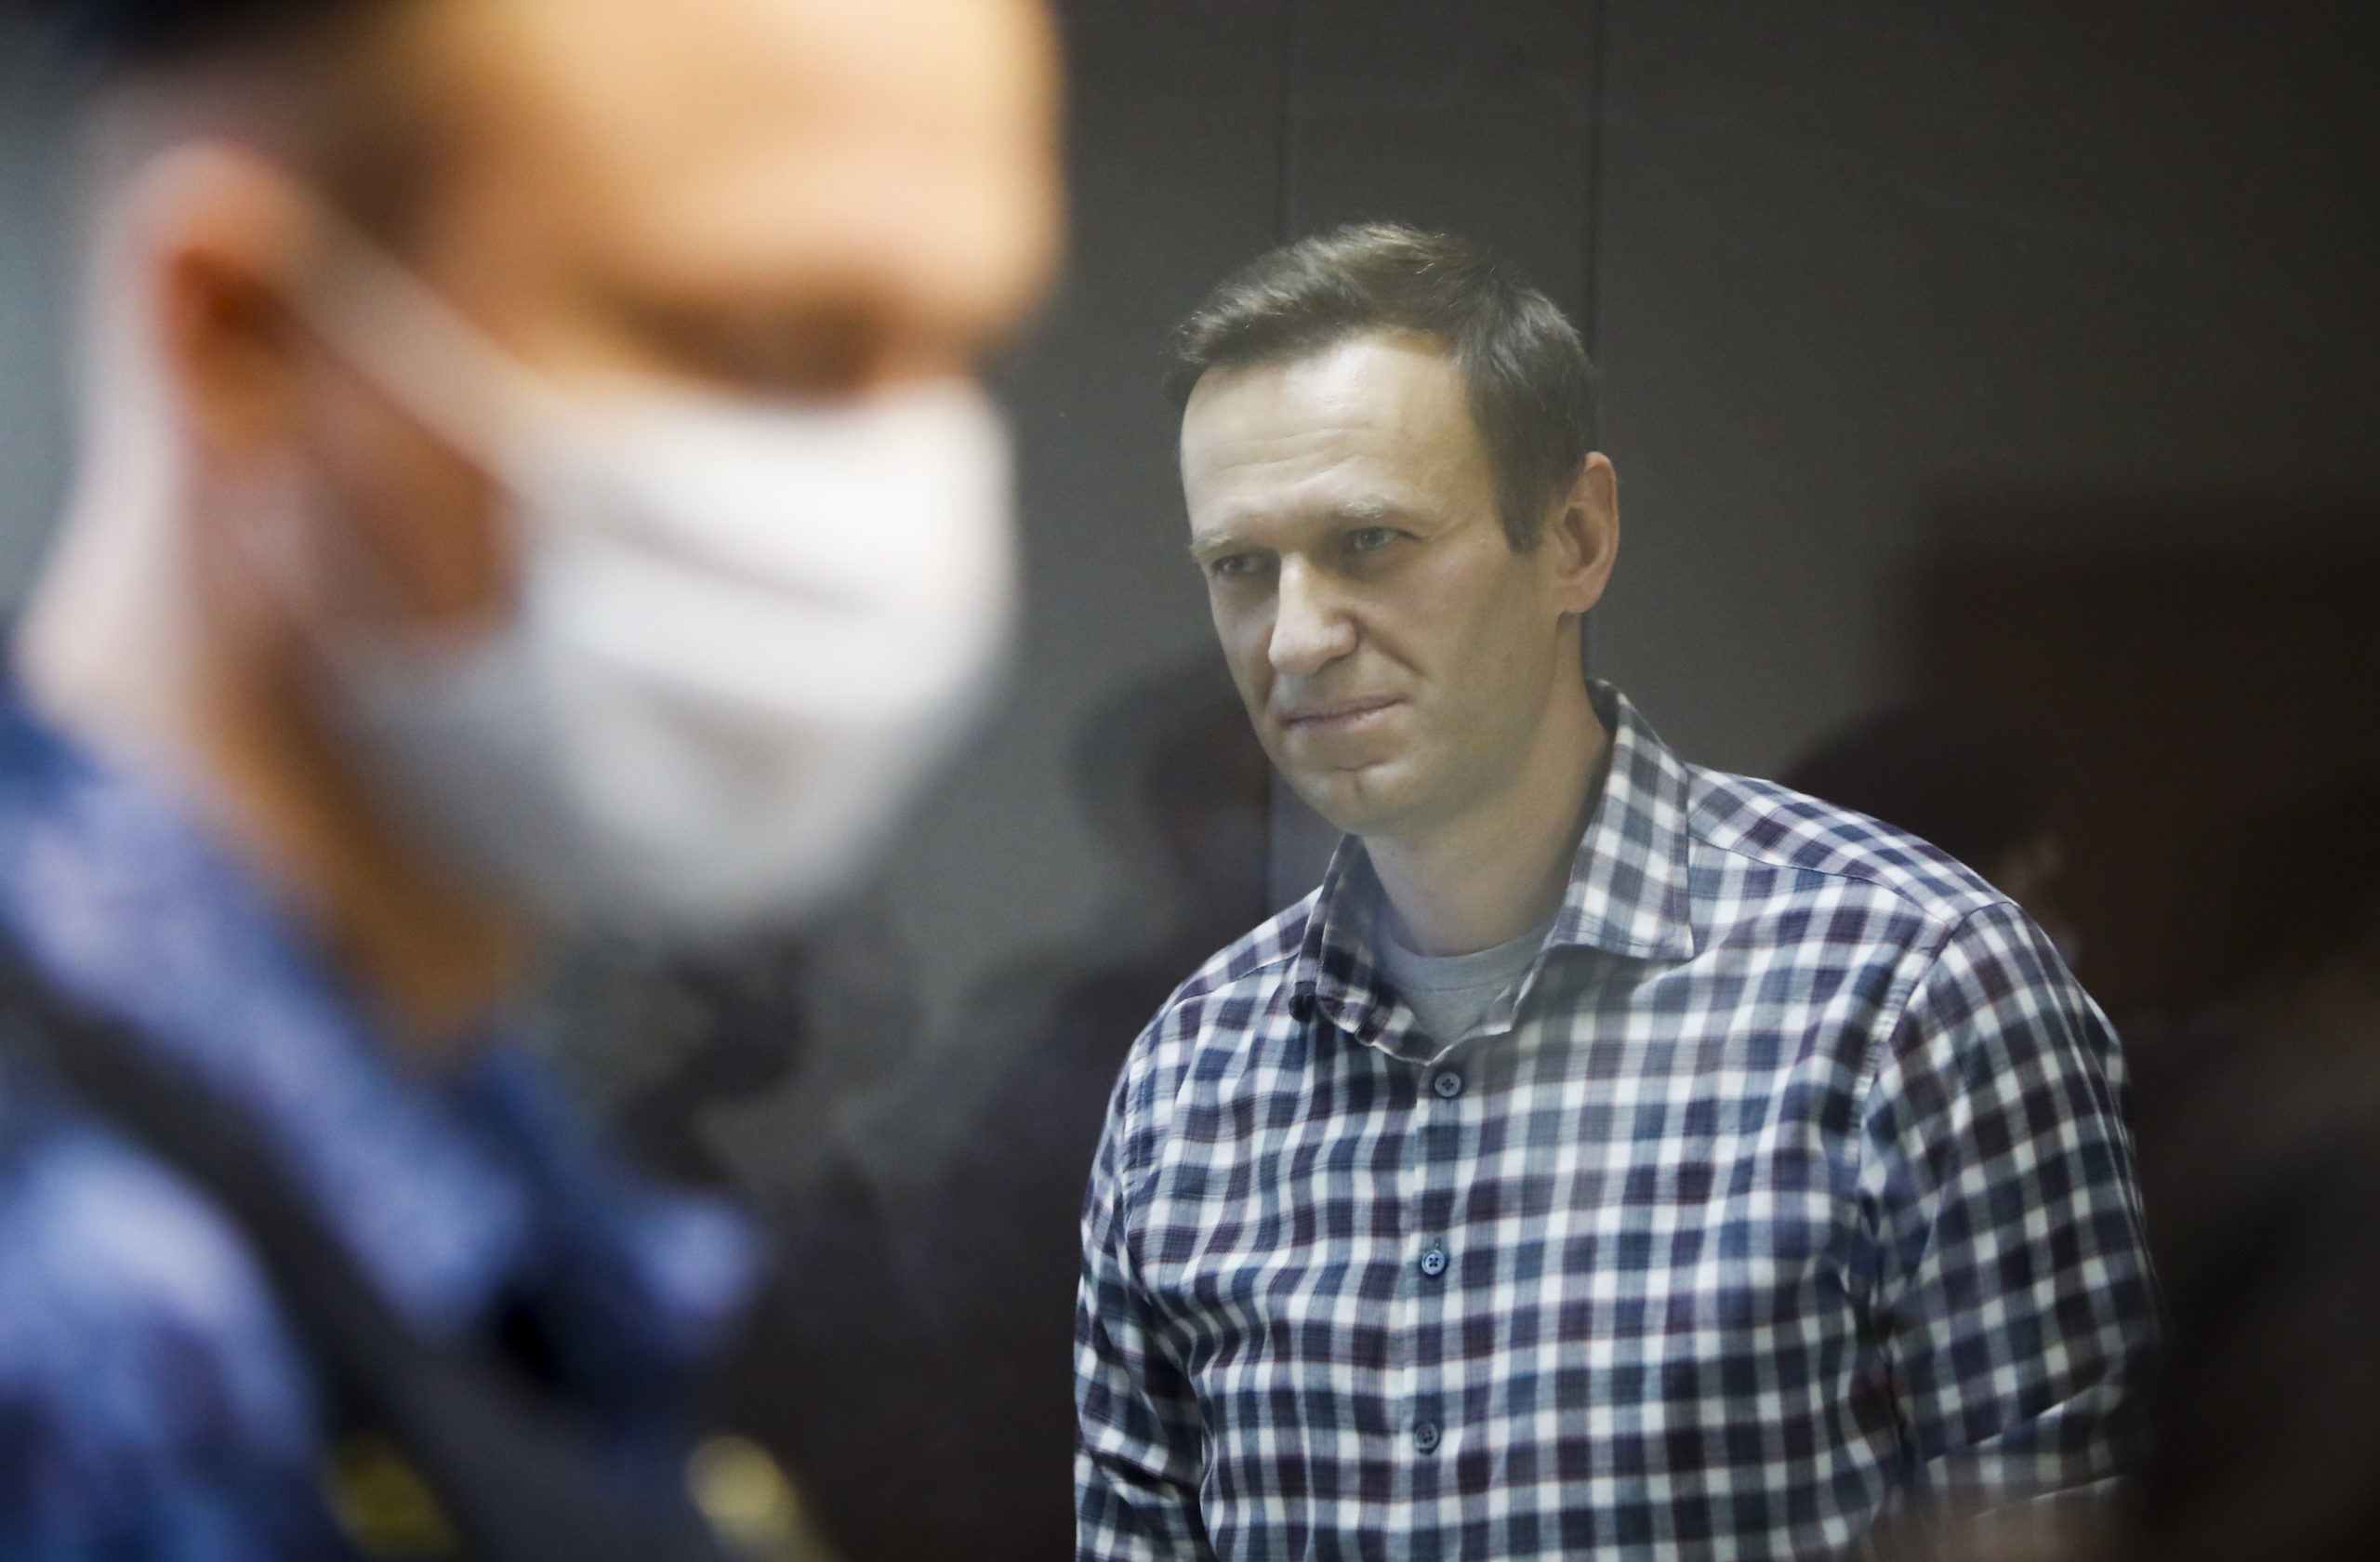 L'opposant russe Alexeï Navalny est arrivé dans une colonie pénitentiaire